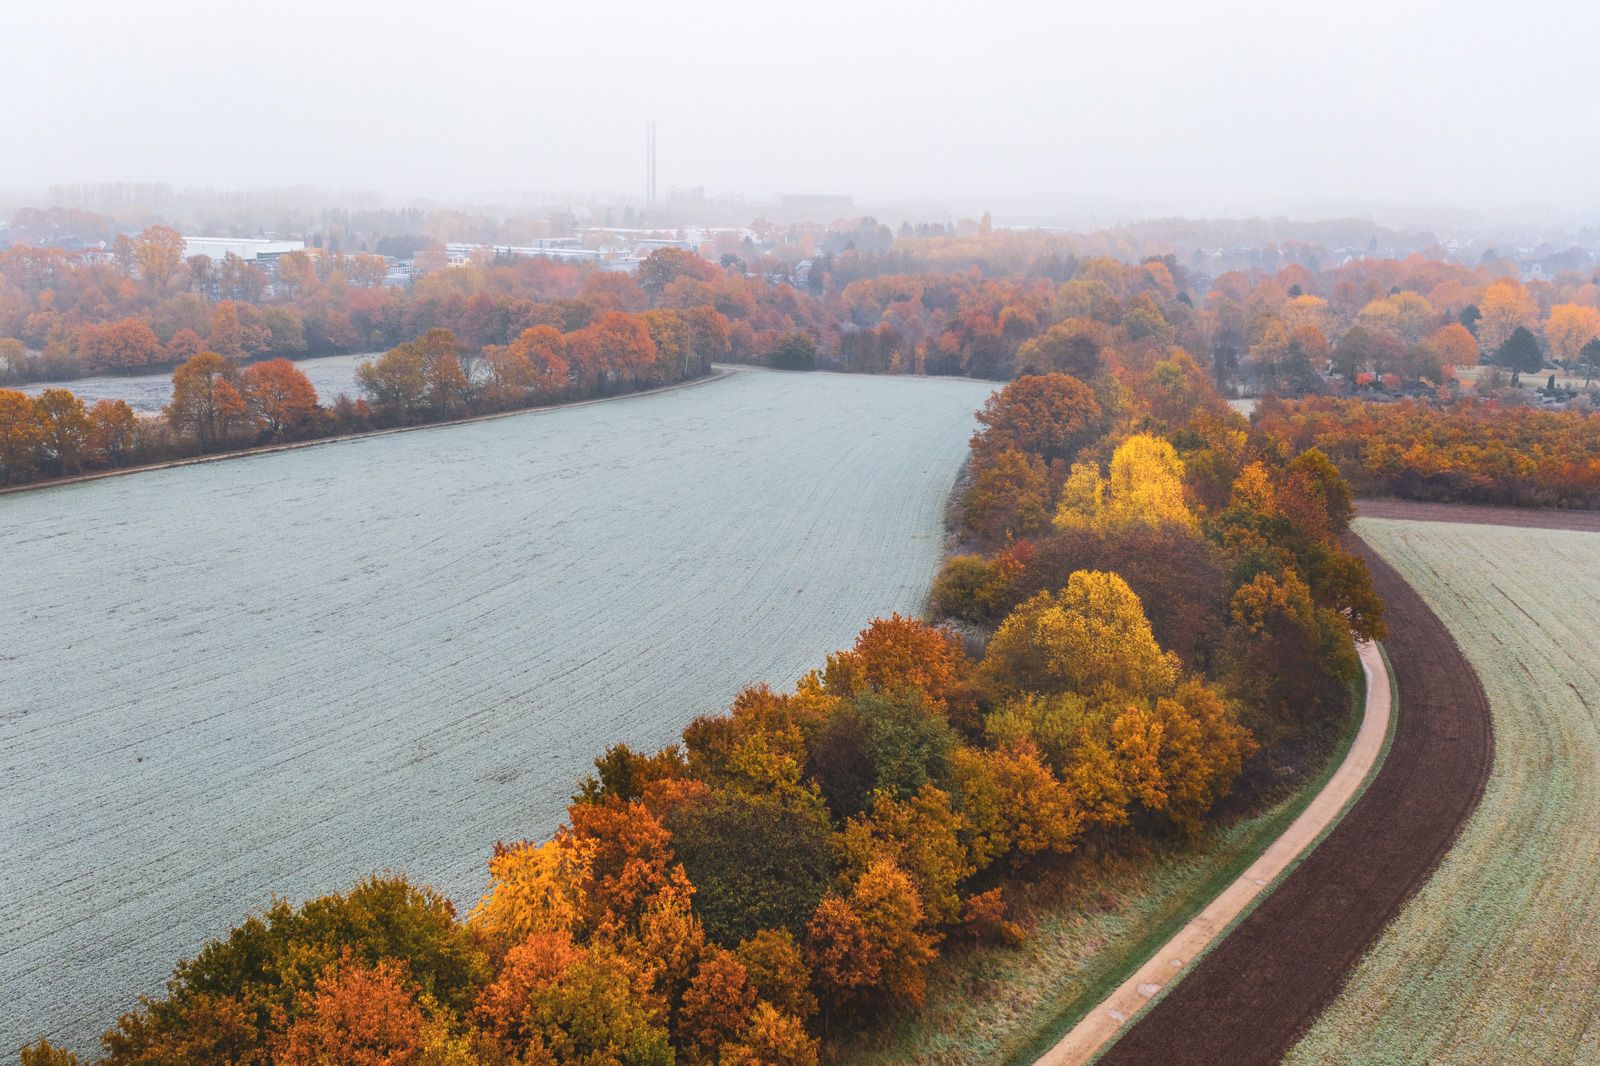 Misty morning in November 2019 above the fields near Bielefeld-Heepen.